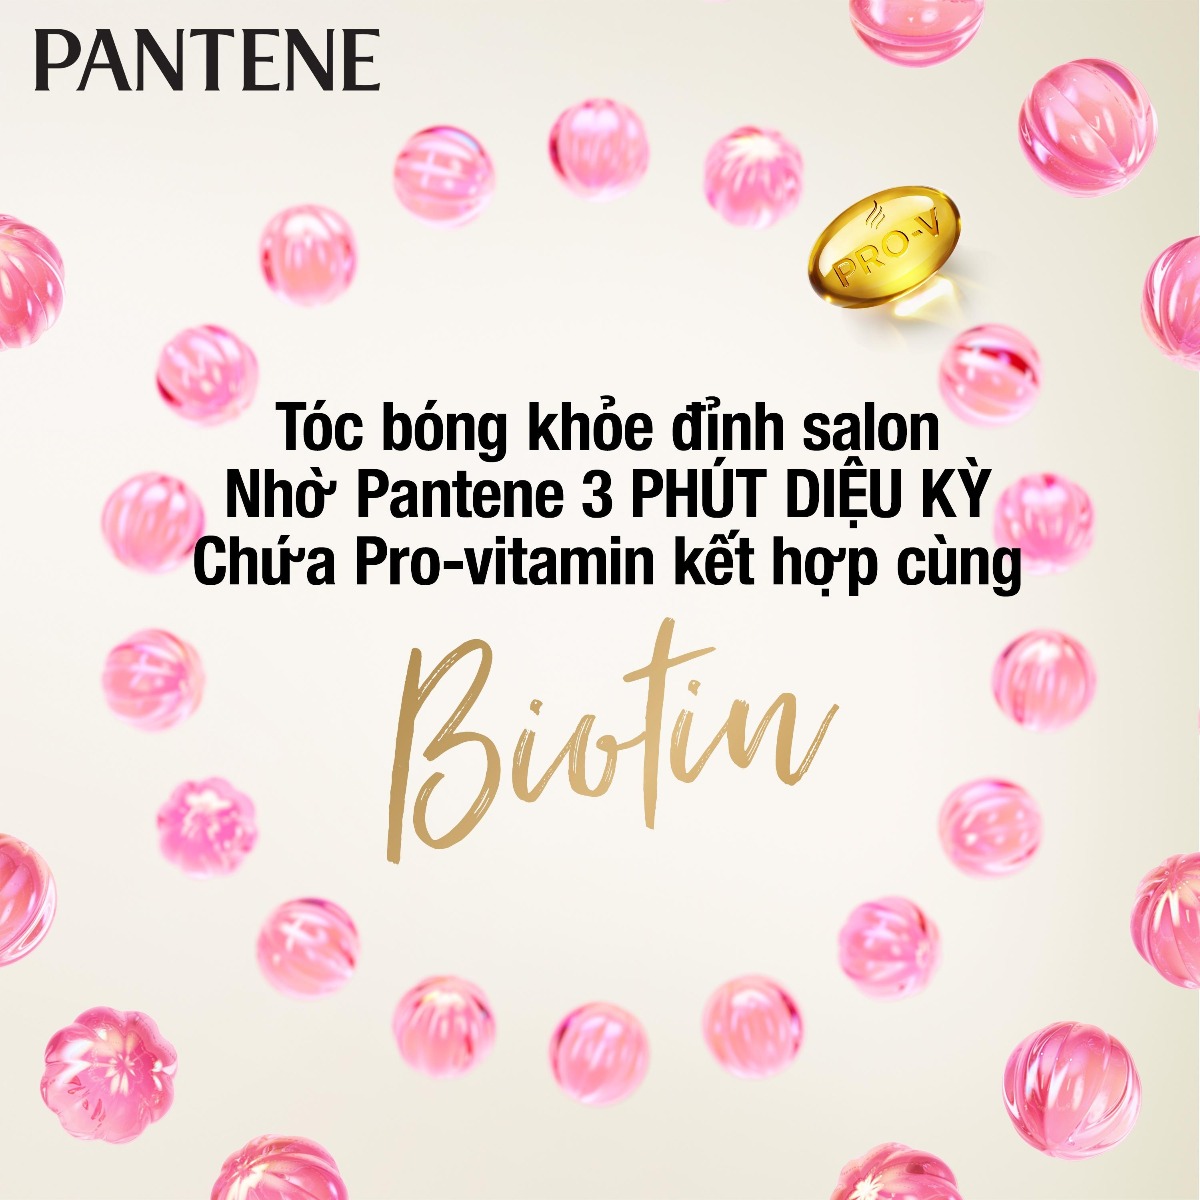 Dầu Xả PANTENE 3 Phút Diệu Kỳ Ngăn Rụng Tóc chứa Pro-Vitamin kết hợp cùng Biotin cho tóc bóng khoẻ, ngăn ngừa gãy rụng.